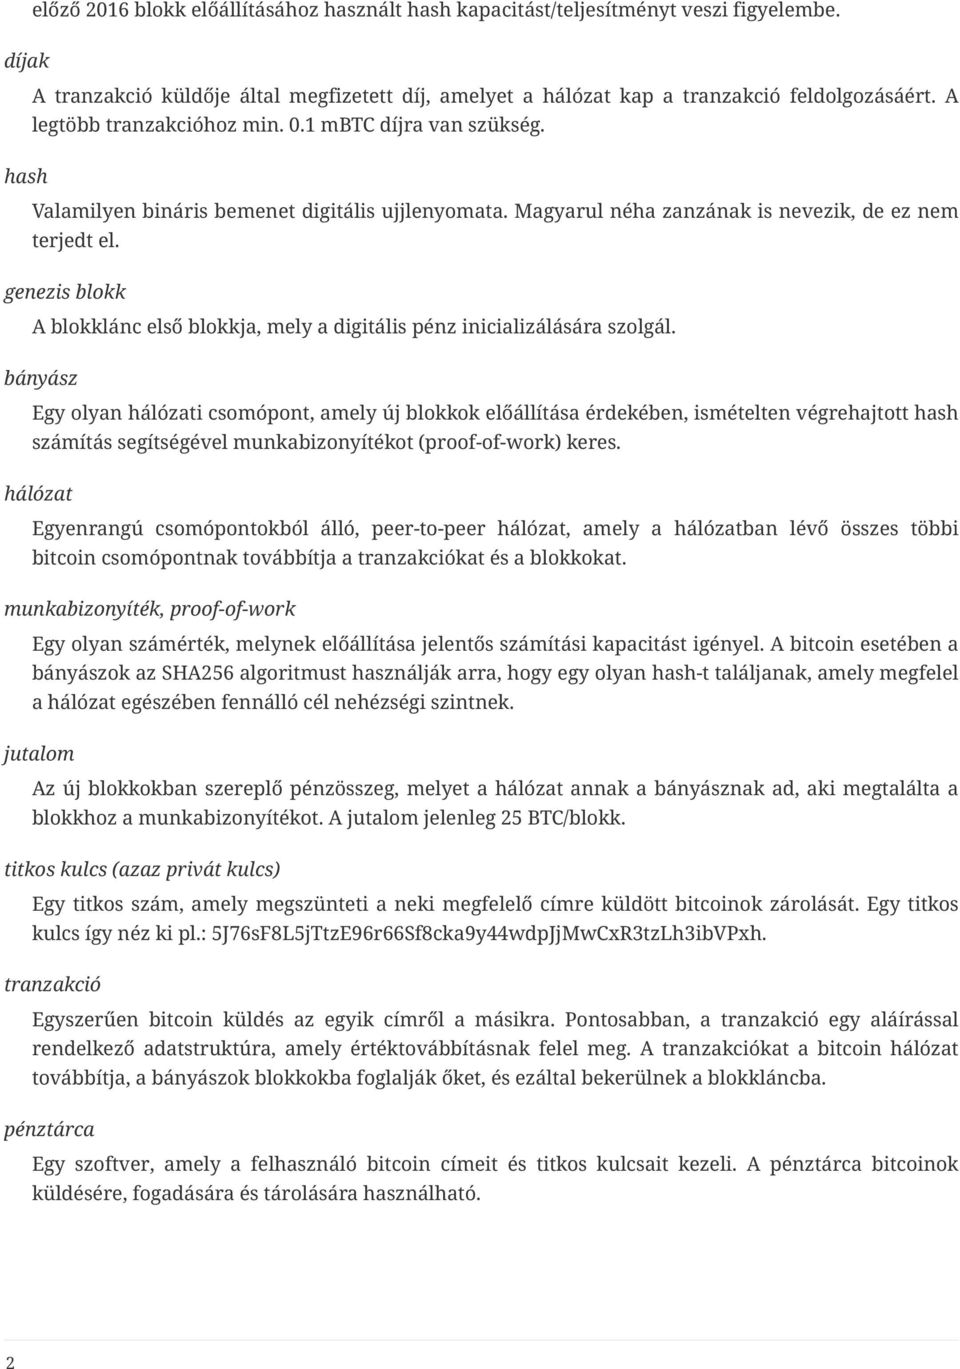 Wikipédia:Kocsmafal (nyelvi)/Archív167